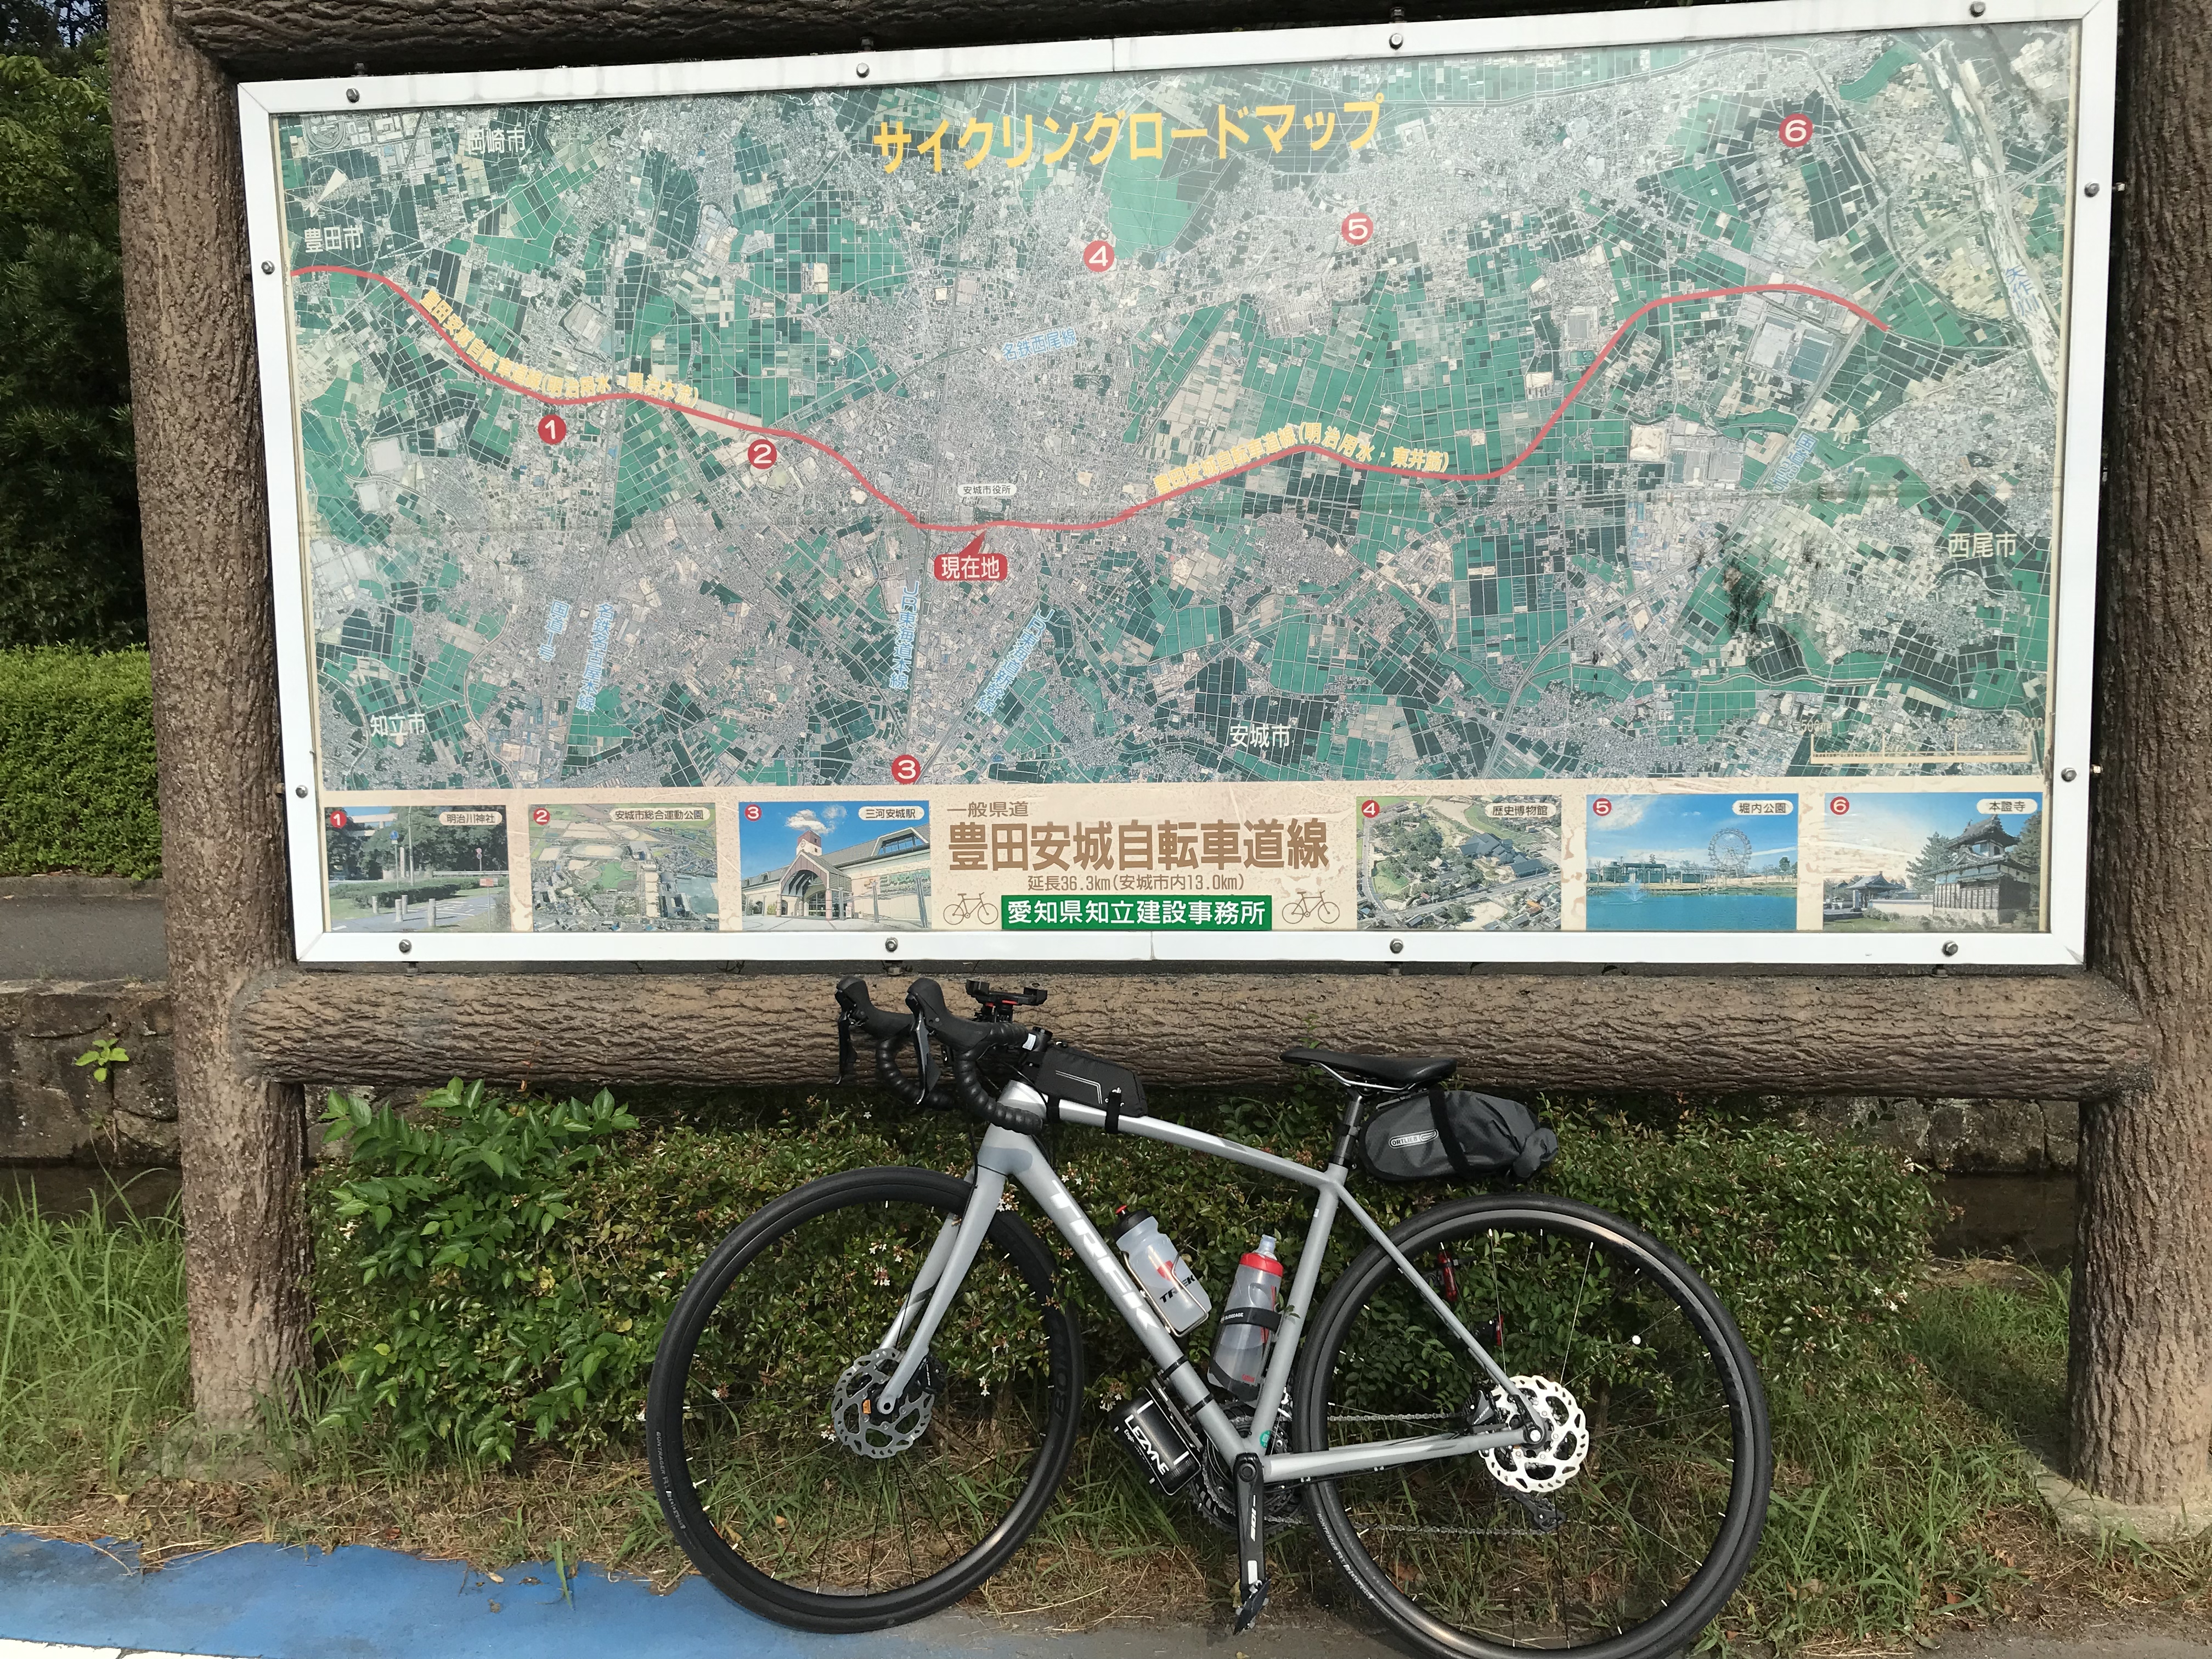 豊田安城サイクリングロード